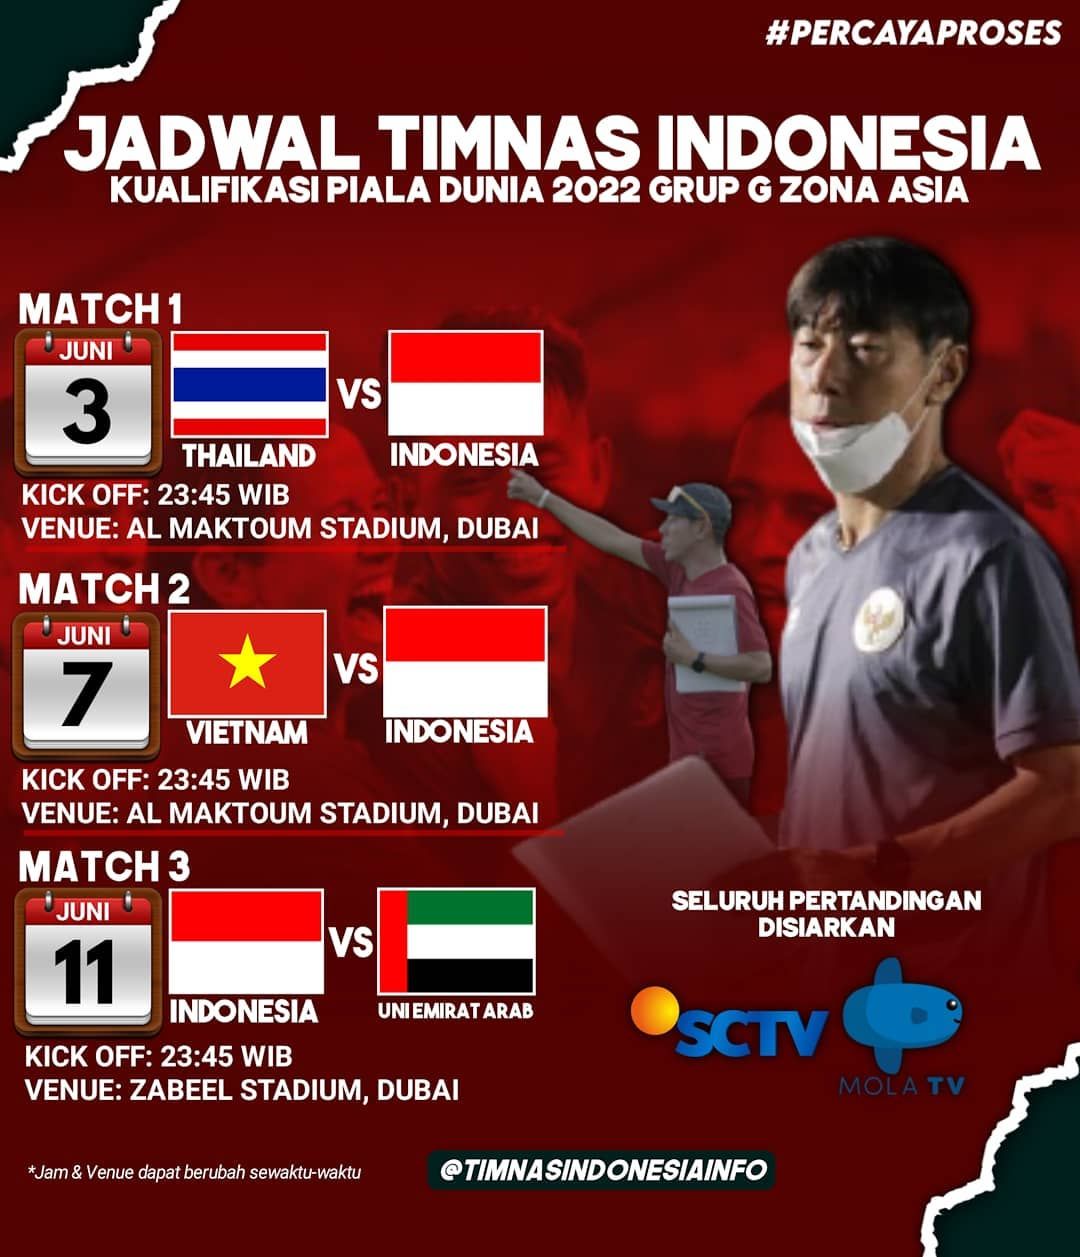 Kualifikasi Piala Dunia 2022 Jadwal Pertandingan Timnas Indonesia vs